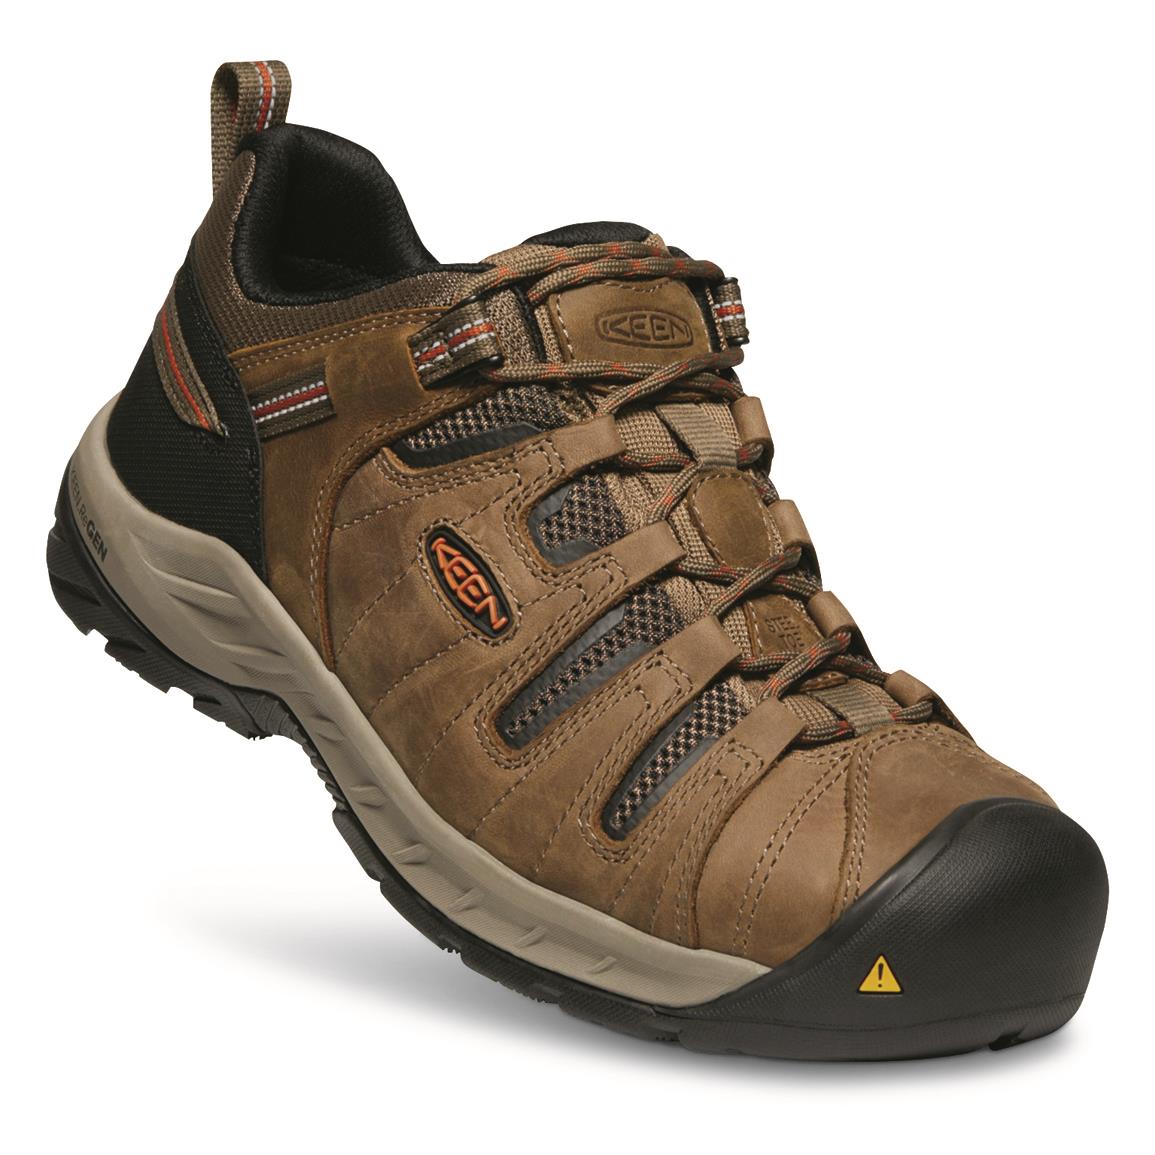 KEEN Utility Men's Flint II Steel Toe Work Shoes, Shitake/Rust